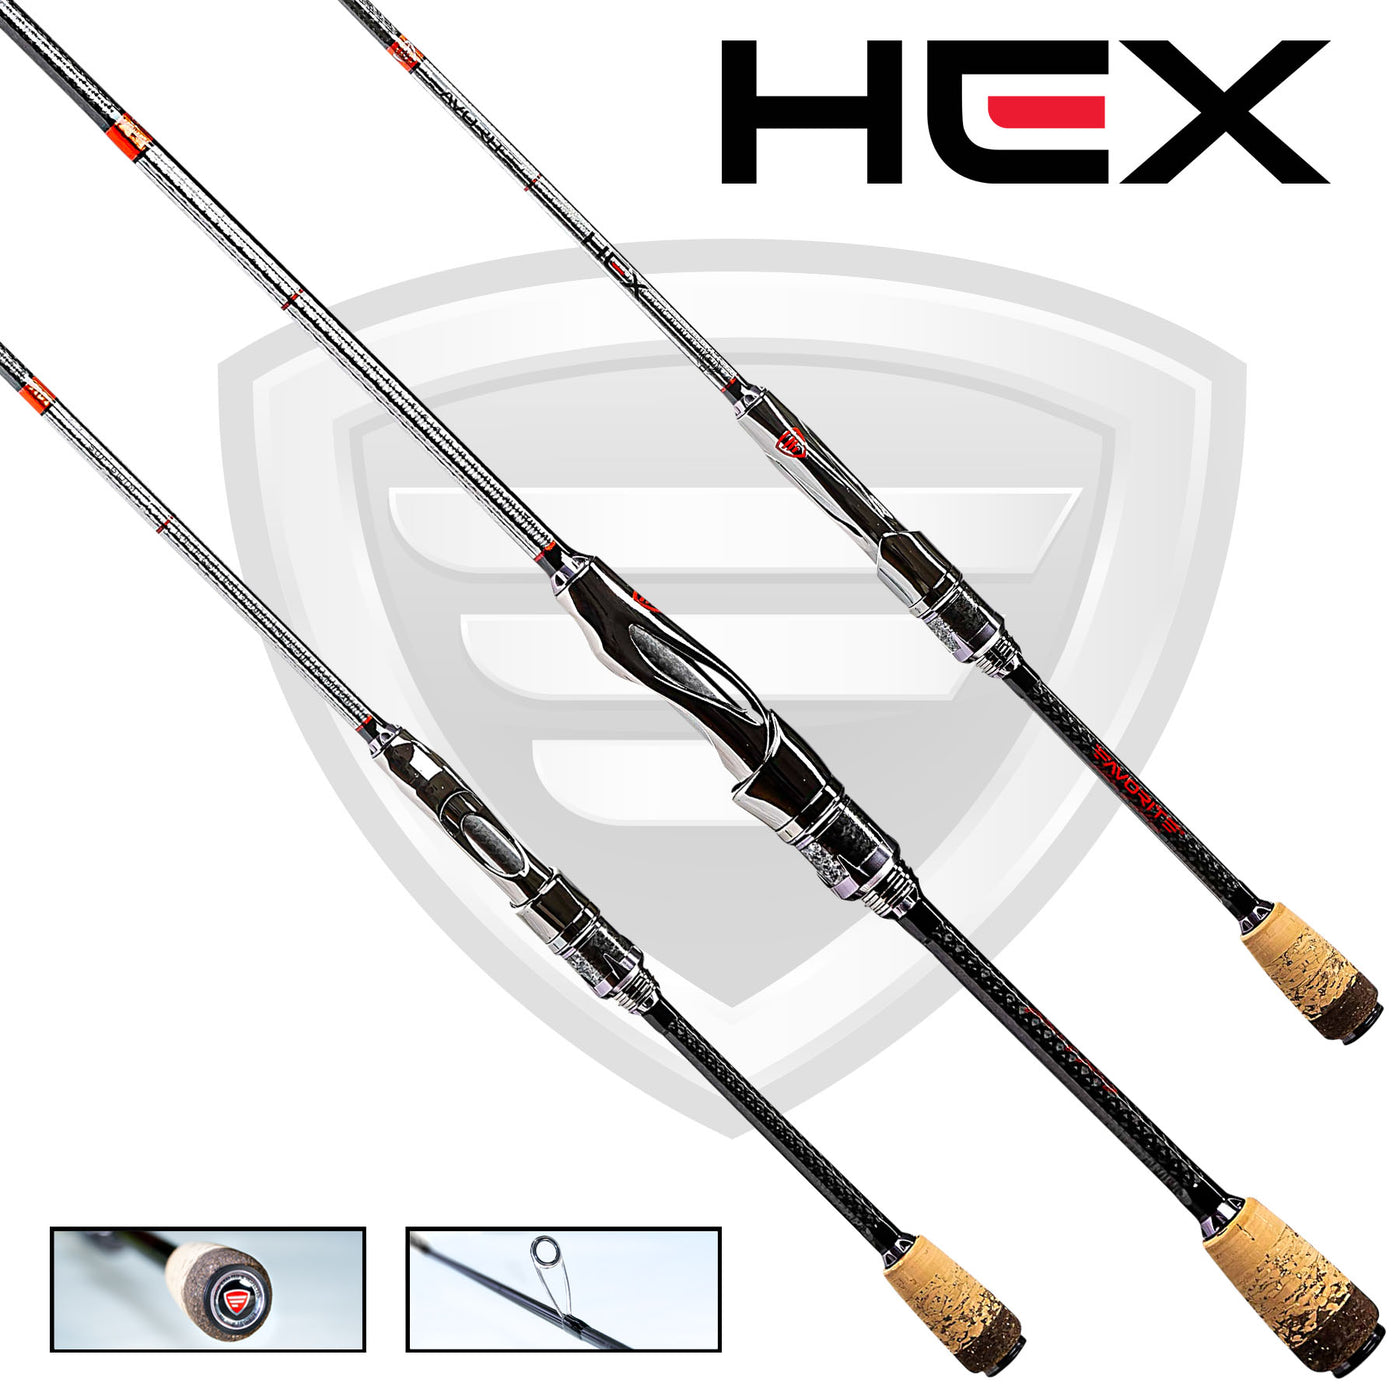 HEX Spinning Rod Favorite Fishing